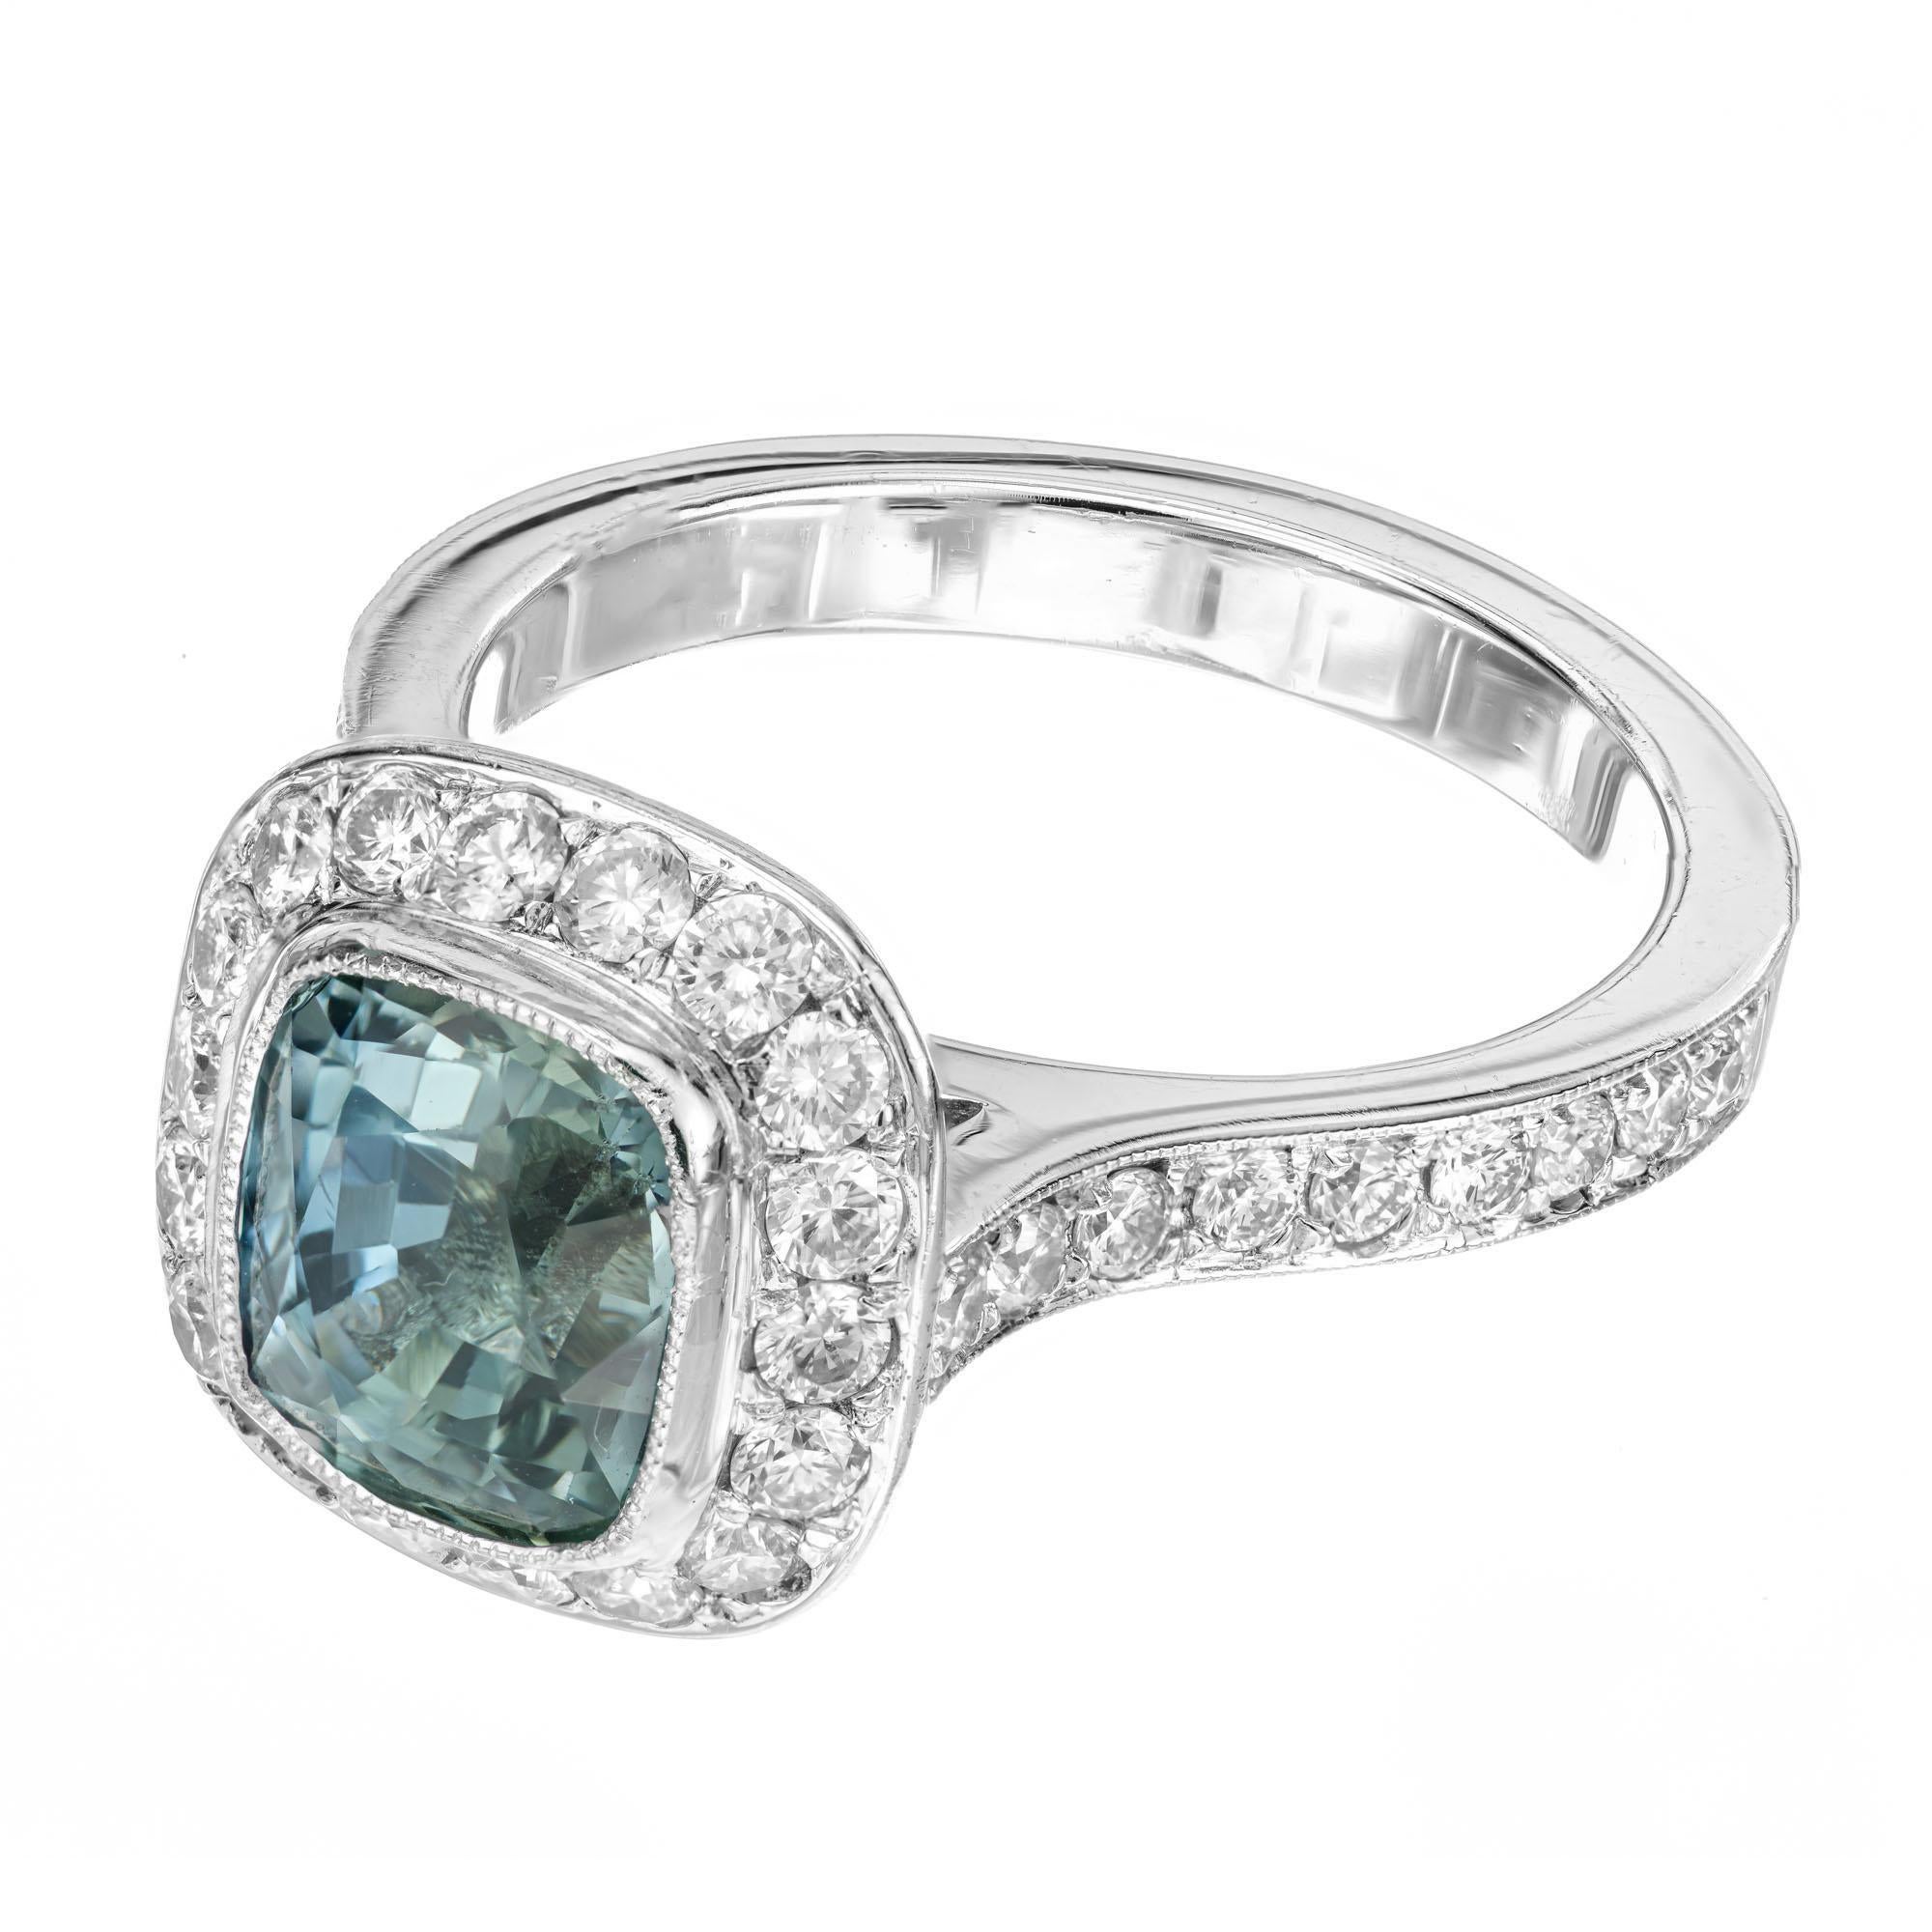 Verlobungsring mit blauem und grünem Saphir und Diamant. GIA-zertifizierter 3,20-Karat-Saphir im Kissenschliff mit 48 runden Diamanten im Idealschliff in einer Platin-Halo-Fassung. Beide Schultern des Schafts sind ebenfalls mit Diamanten im